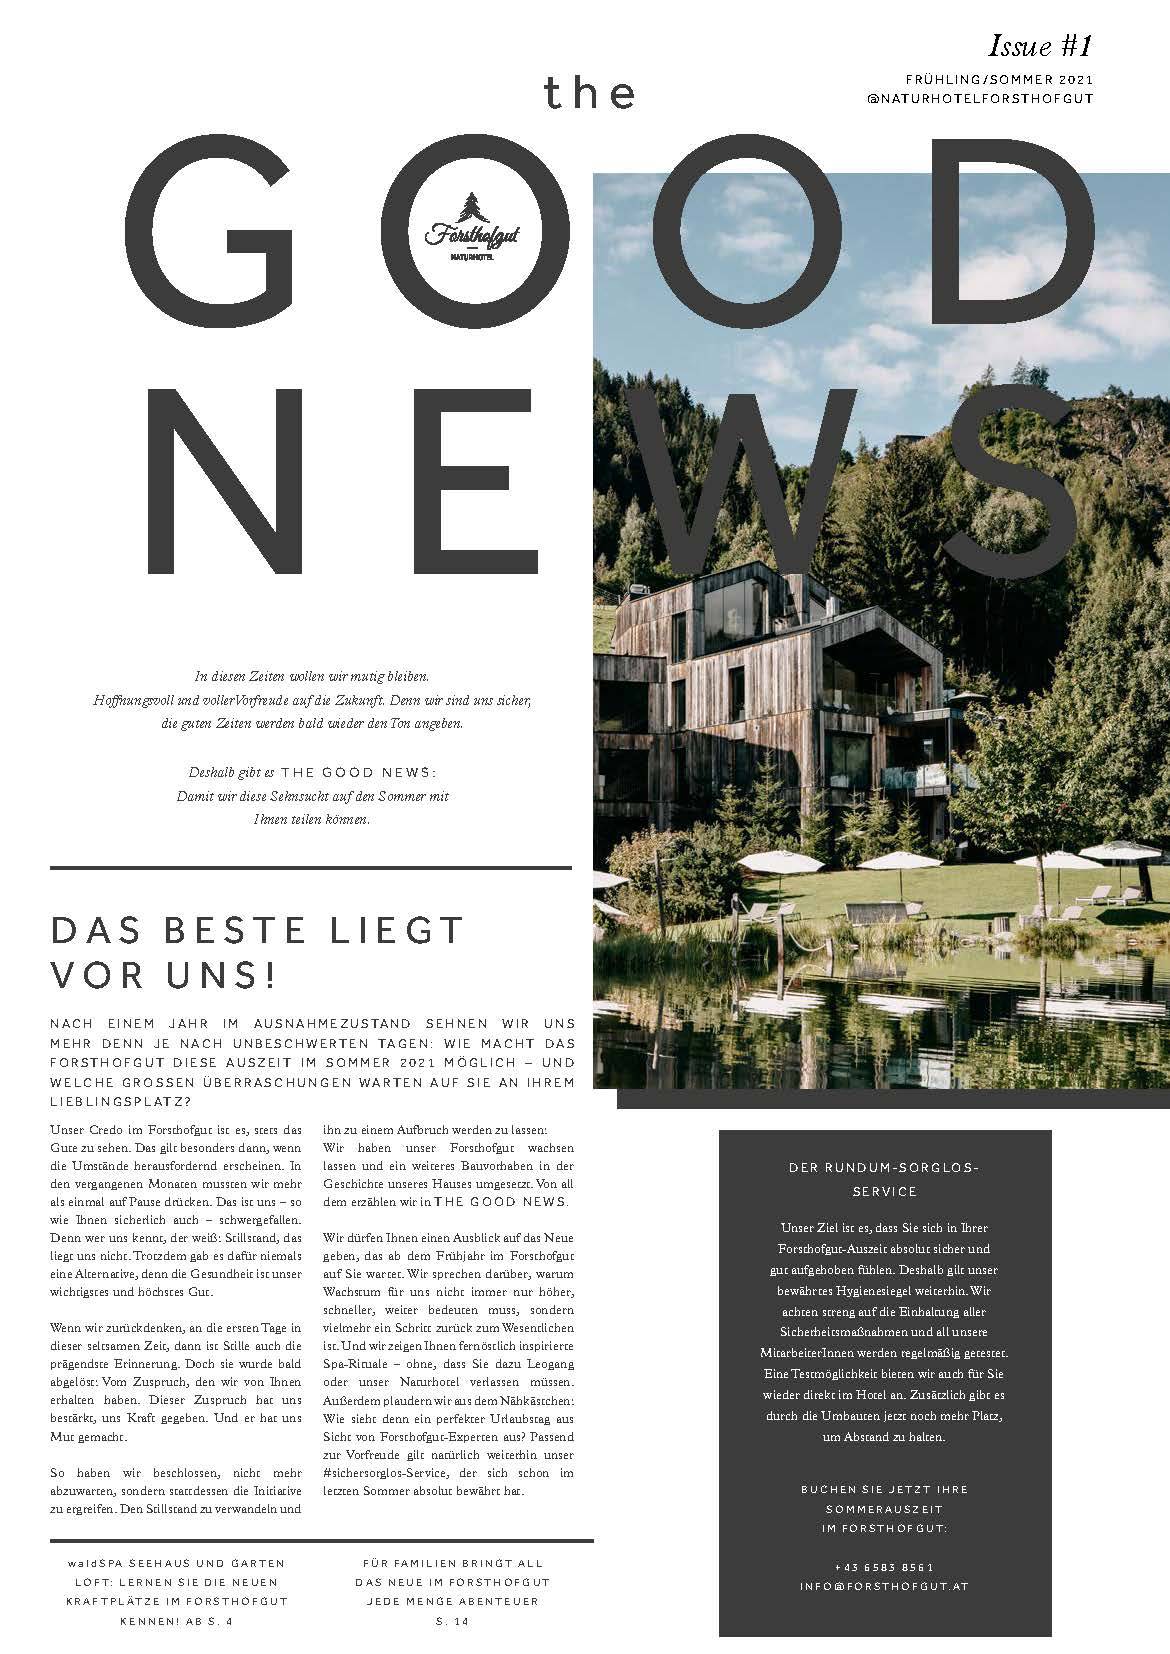 The Good News Frühling/Sommer 2021